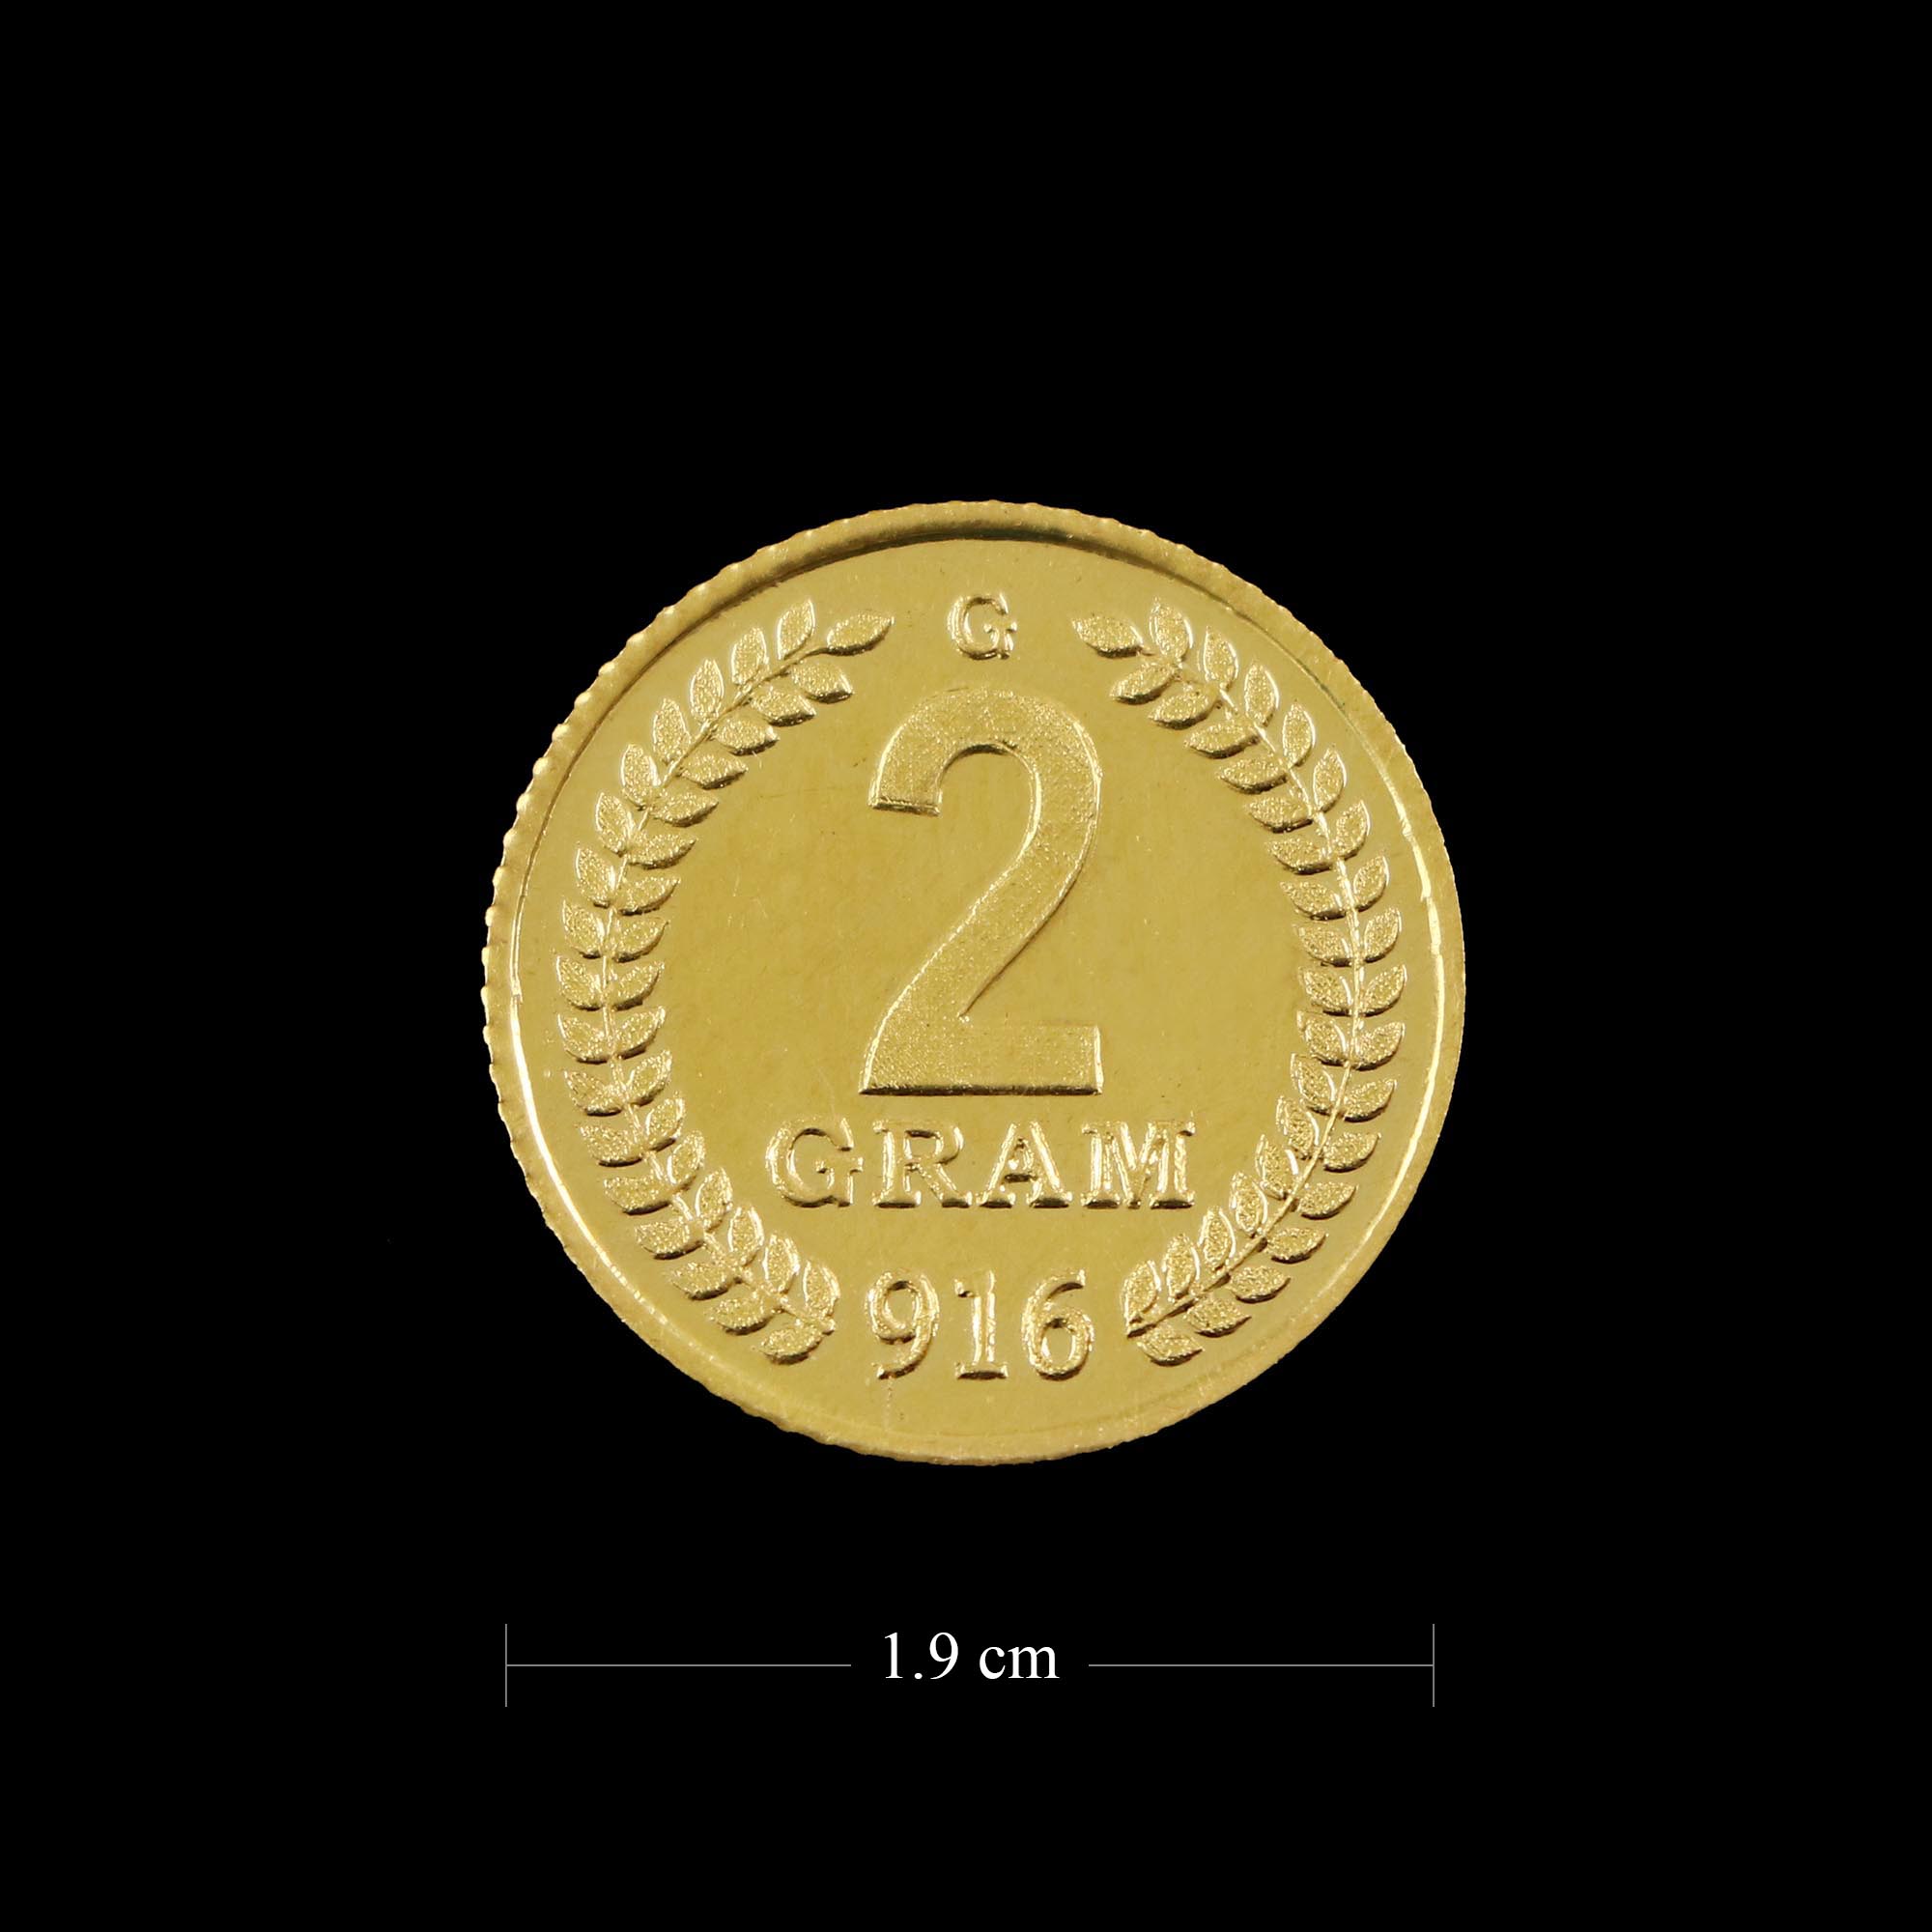 22 KT GOLD 2 GM COIN